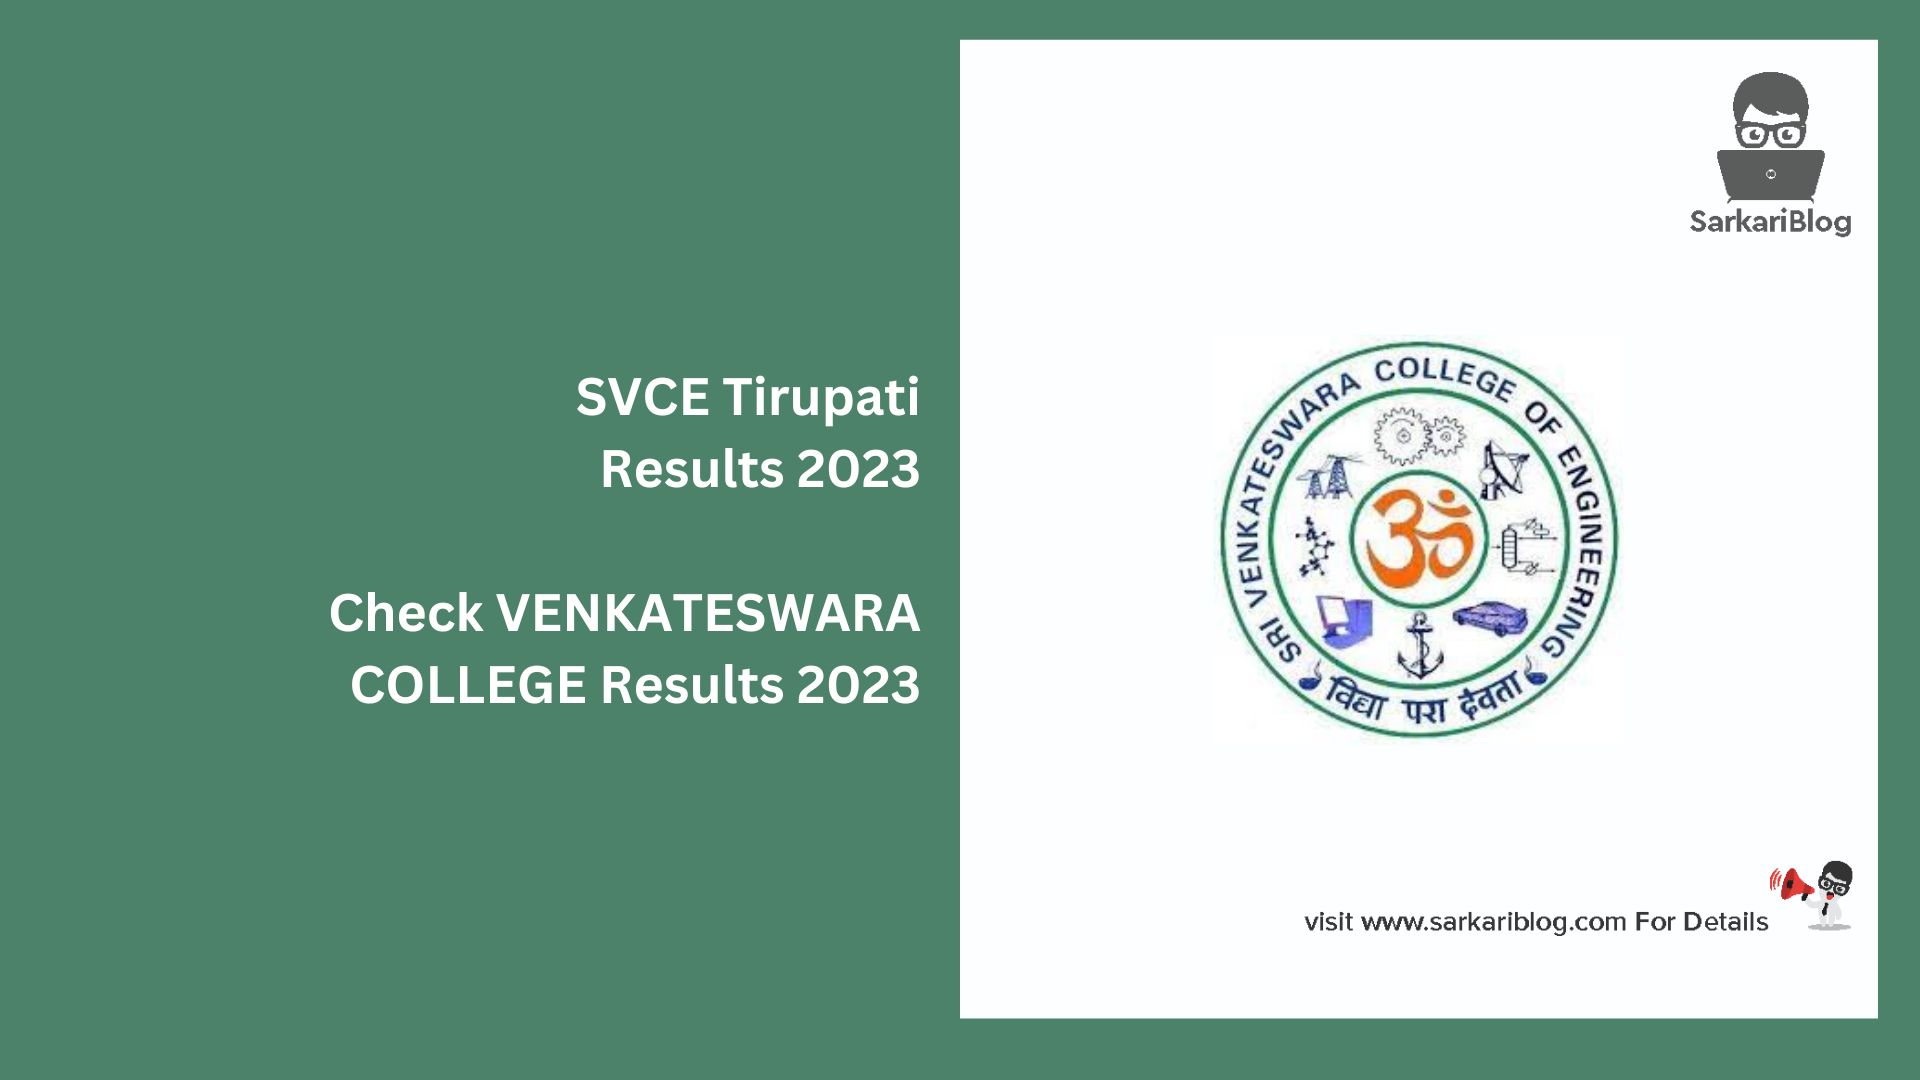 SVCE Tirupati Results 2023